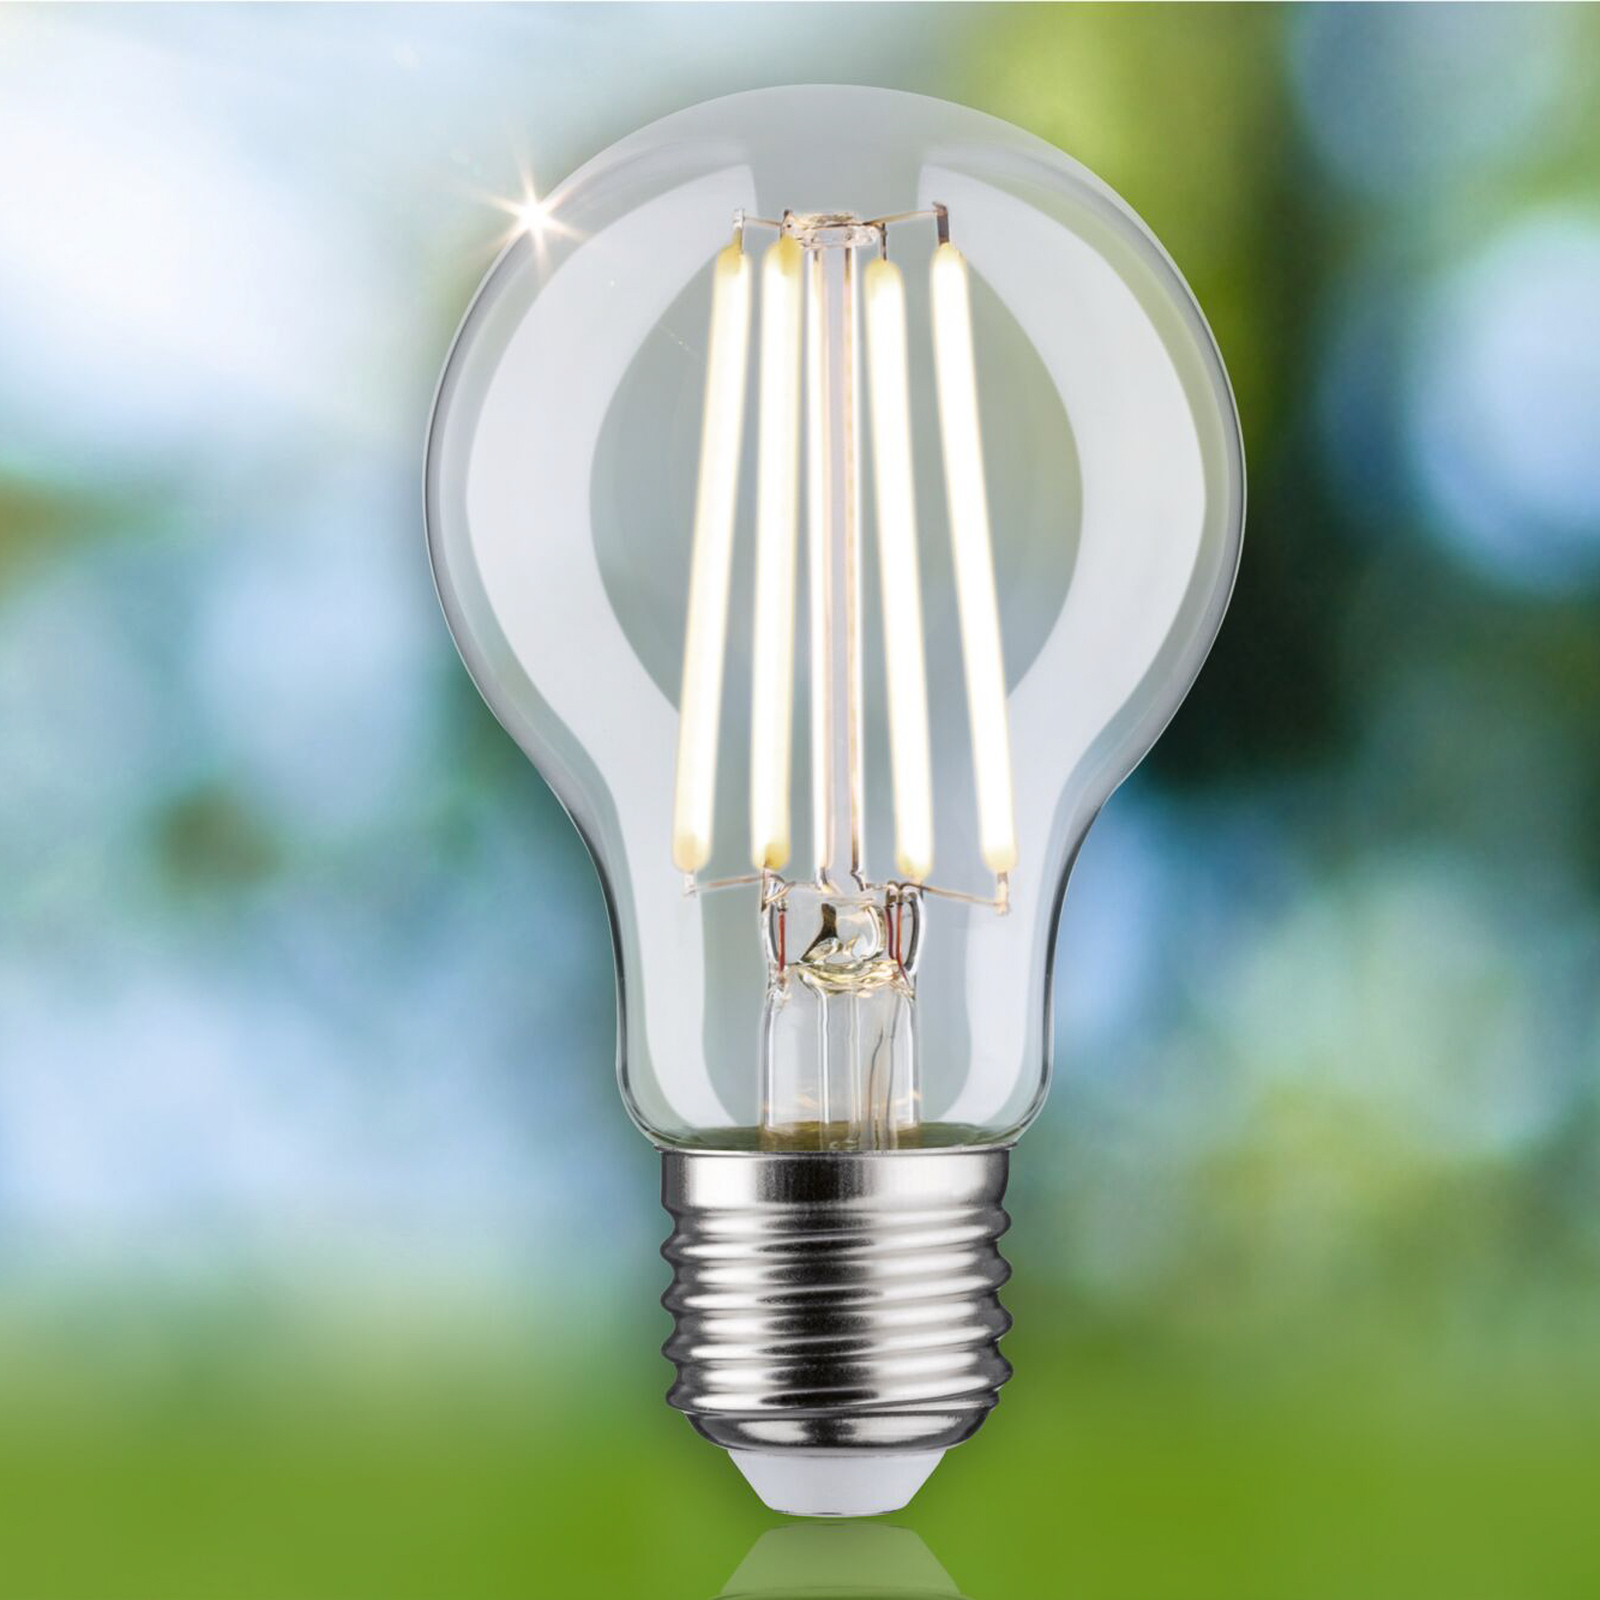 Paulmann Eco-Line LED-Lampe E27 2,5W 525lm 4.000K